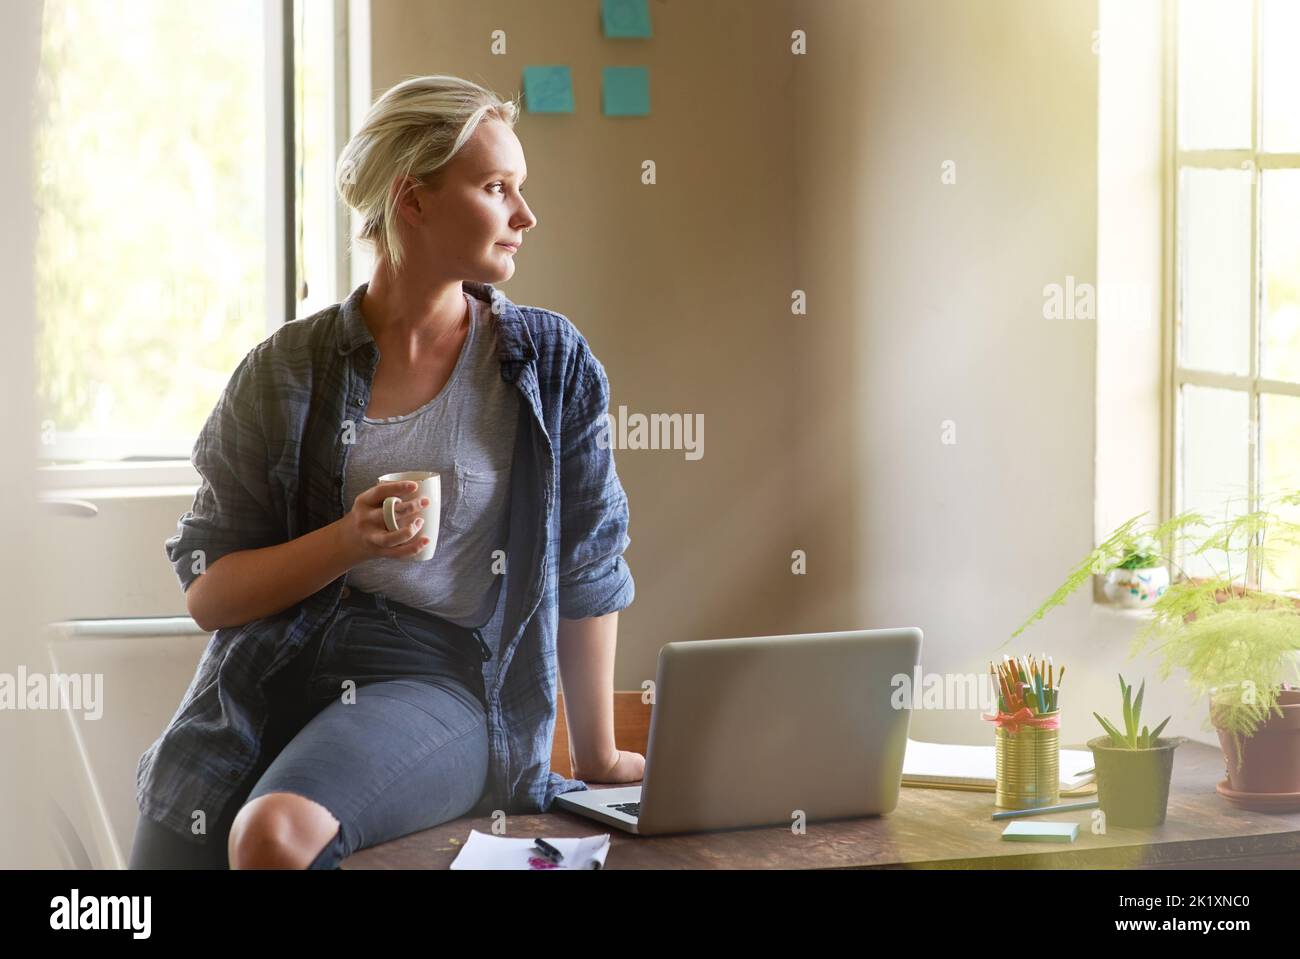 Stellen Sie sich die Möglichkeiten vor... eine junge Frau, die nachdenklich aussieht, während sie auf ihrem Schreibtisch sitzt und Kaffee trinkt. Stockfoto